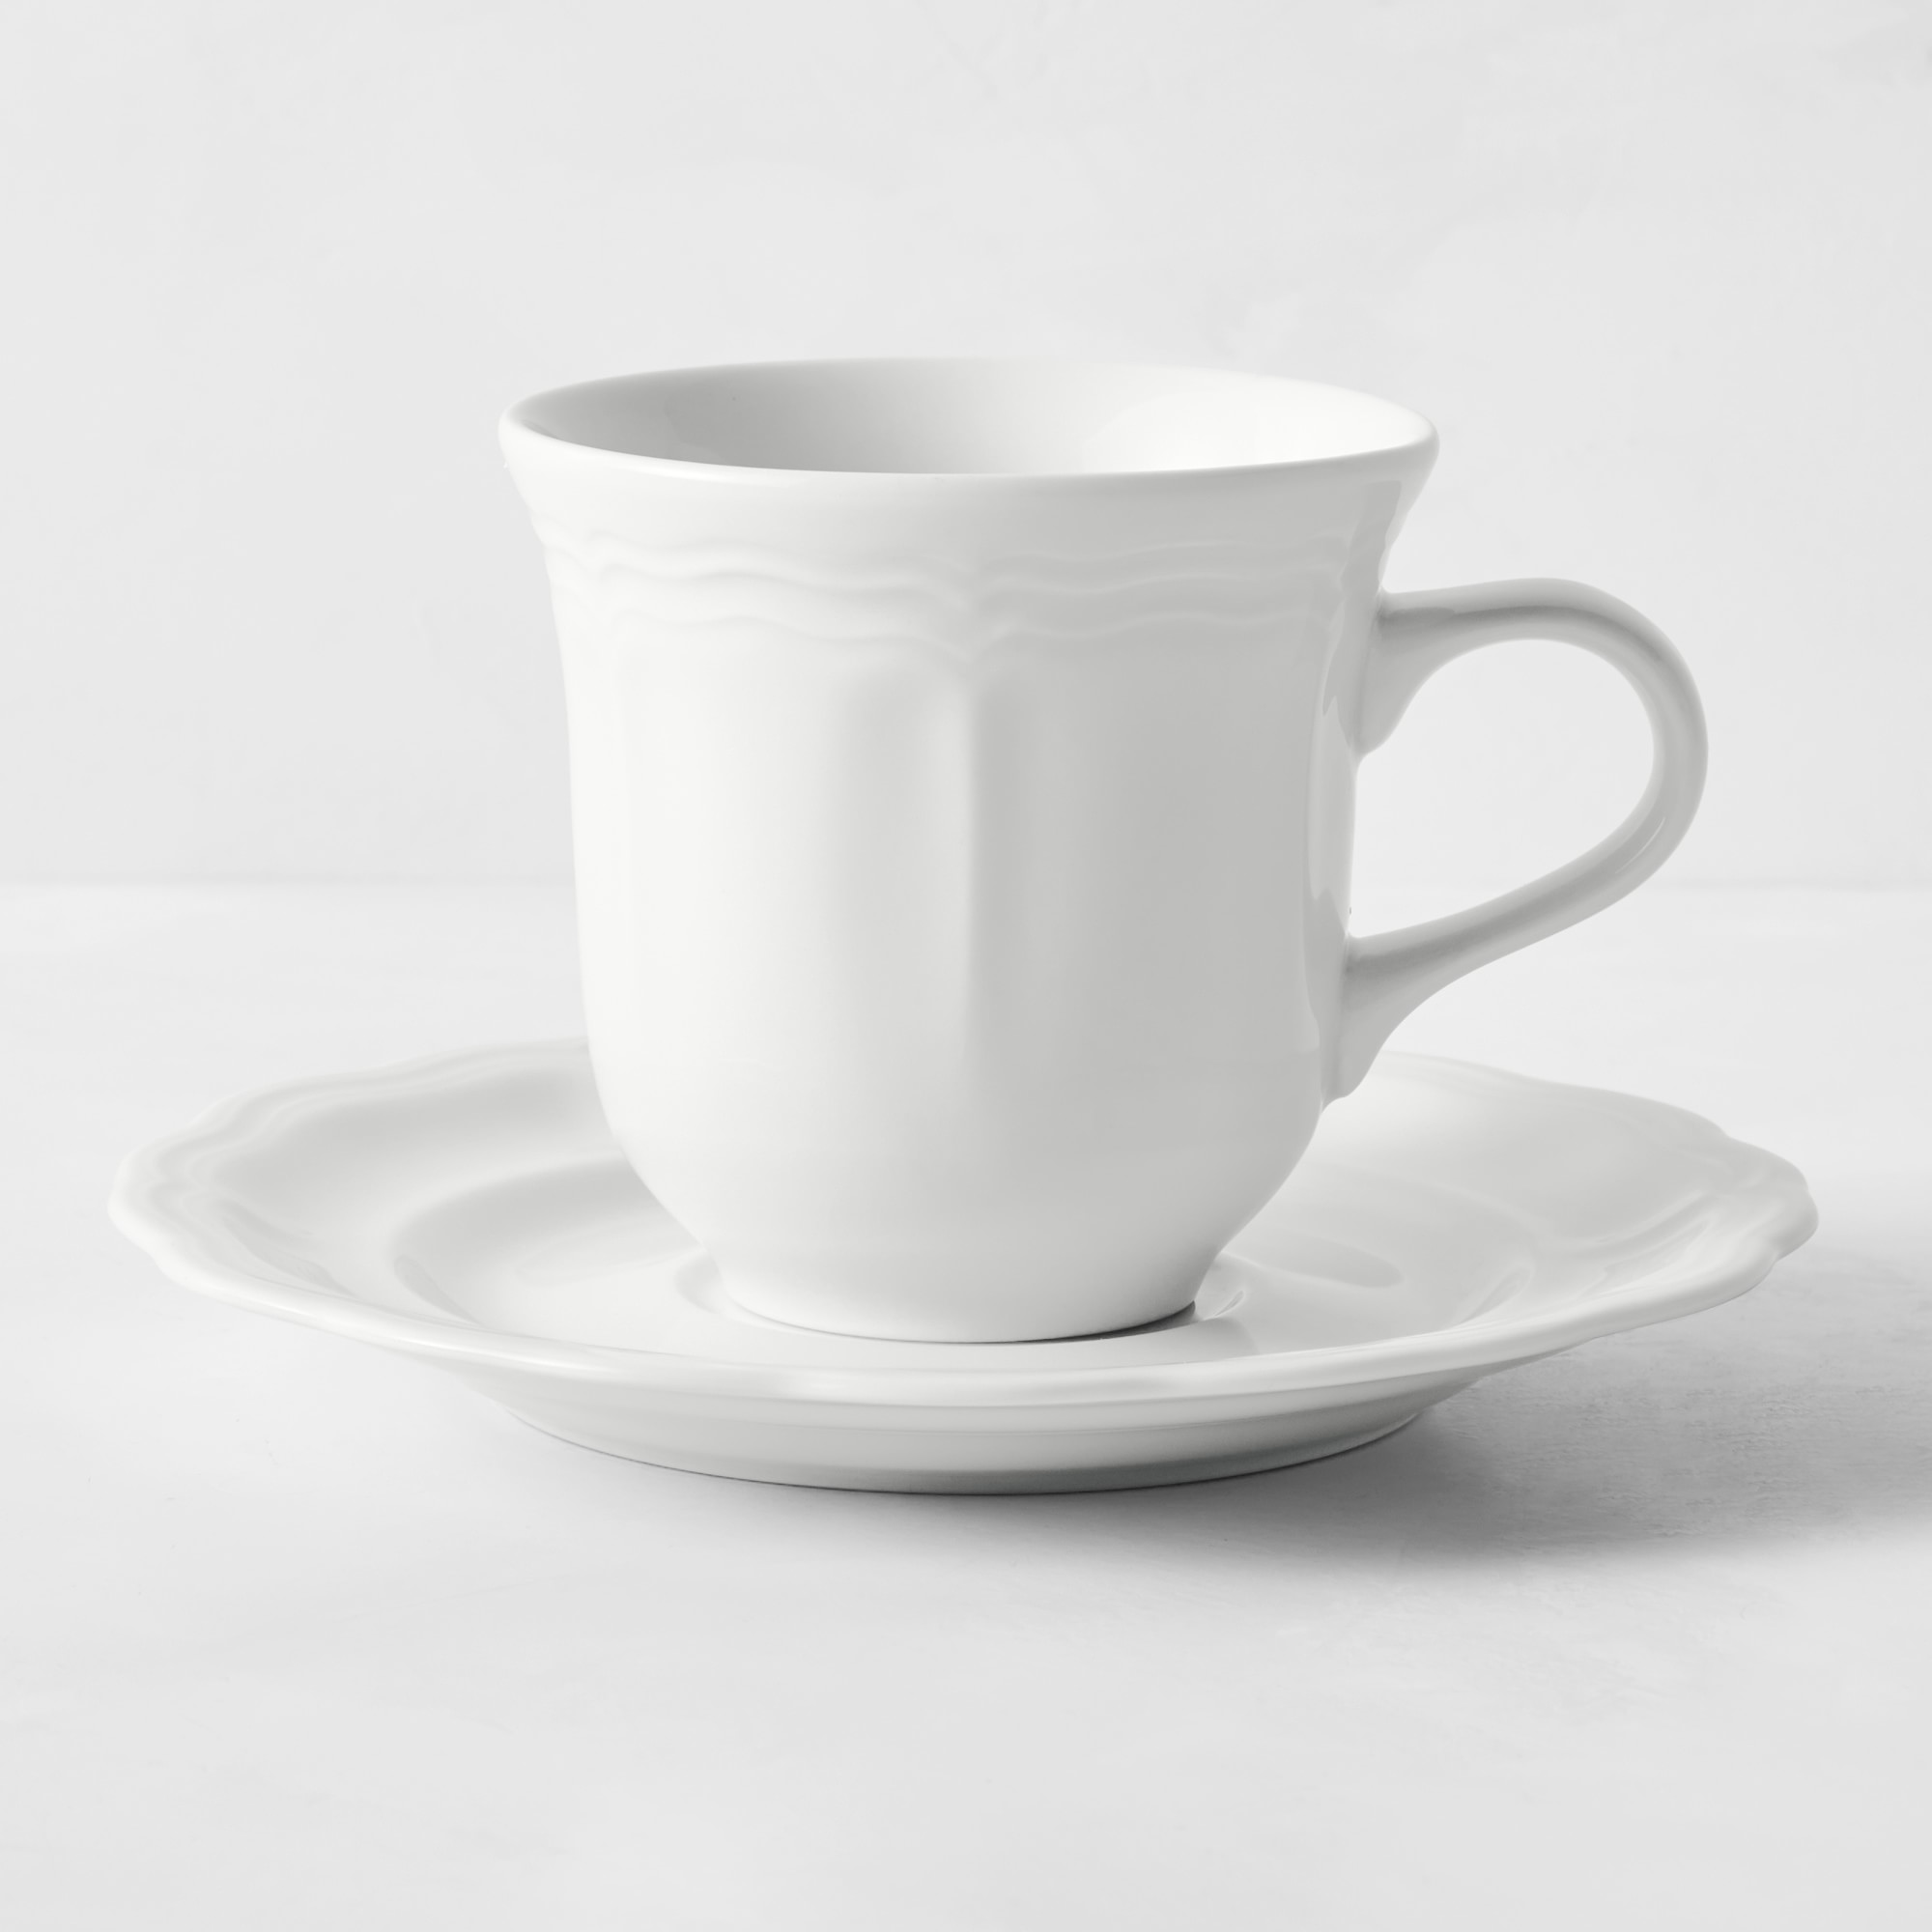 Pillivuyt Queen Anne Porcelain Cups & Saucers